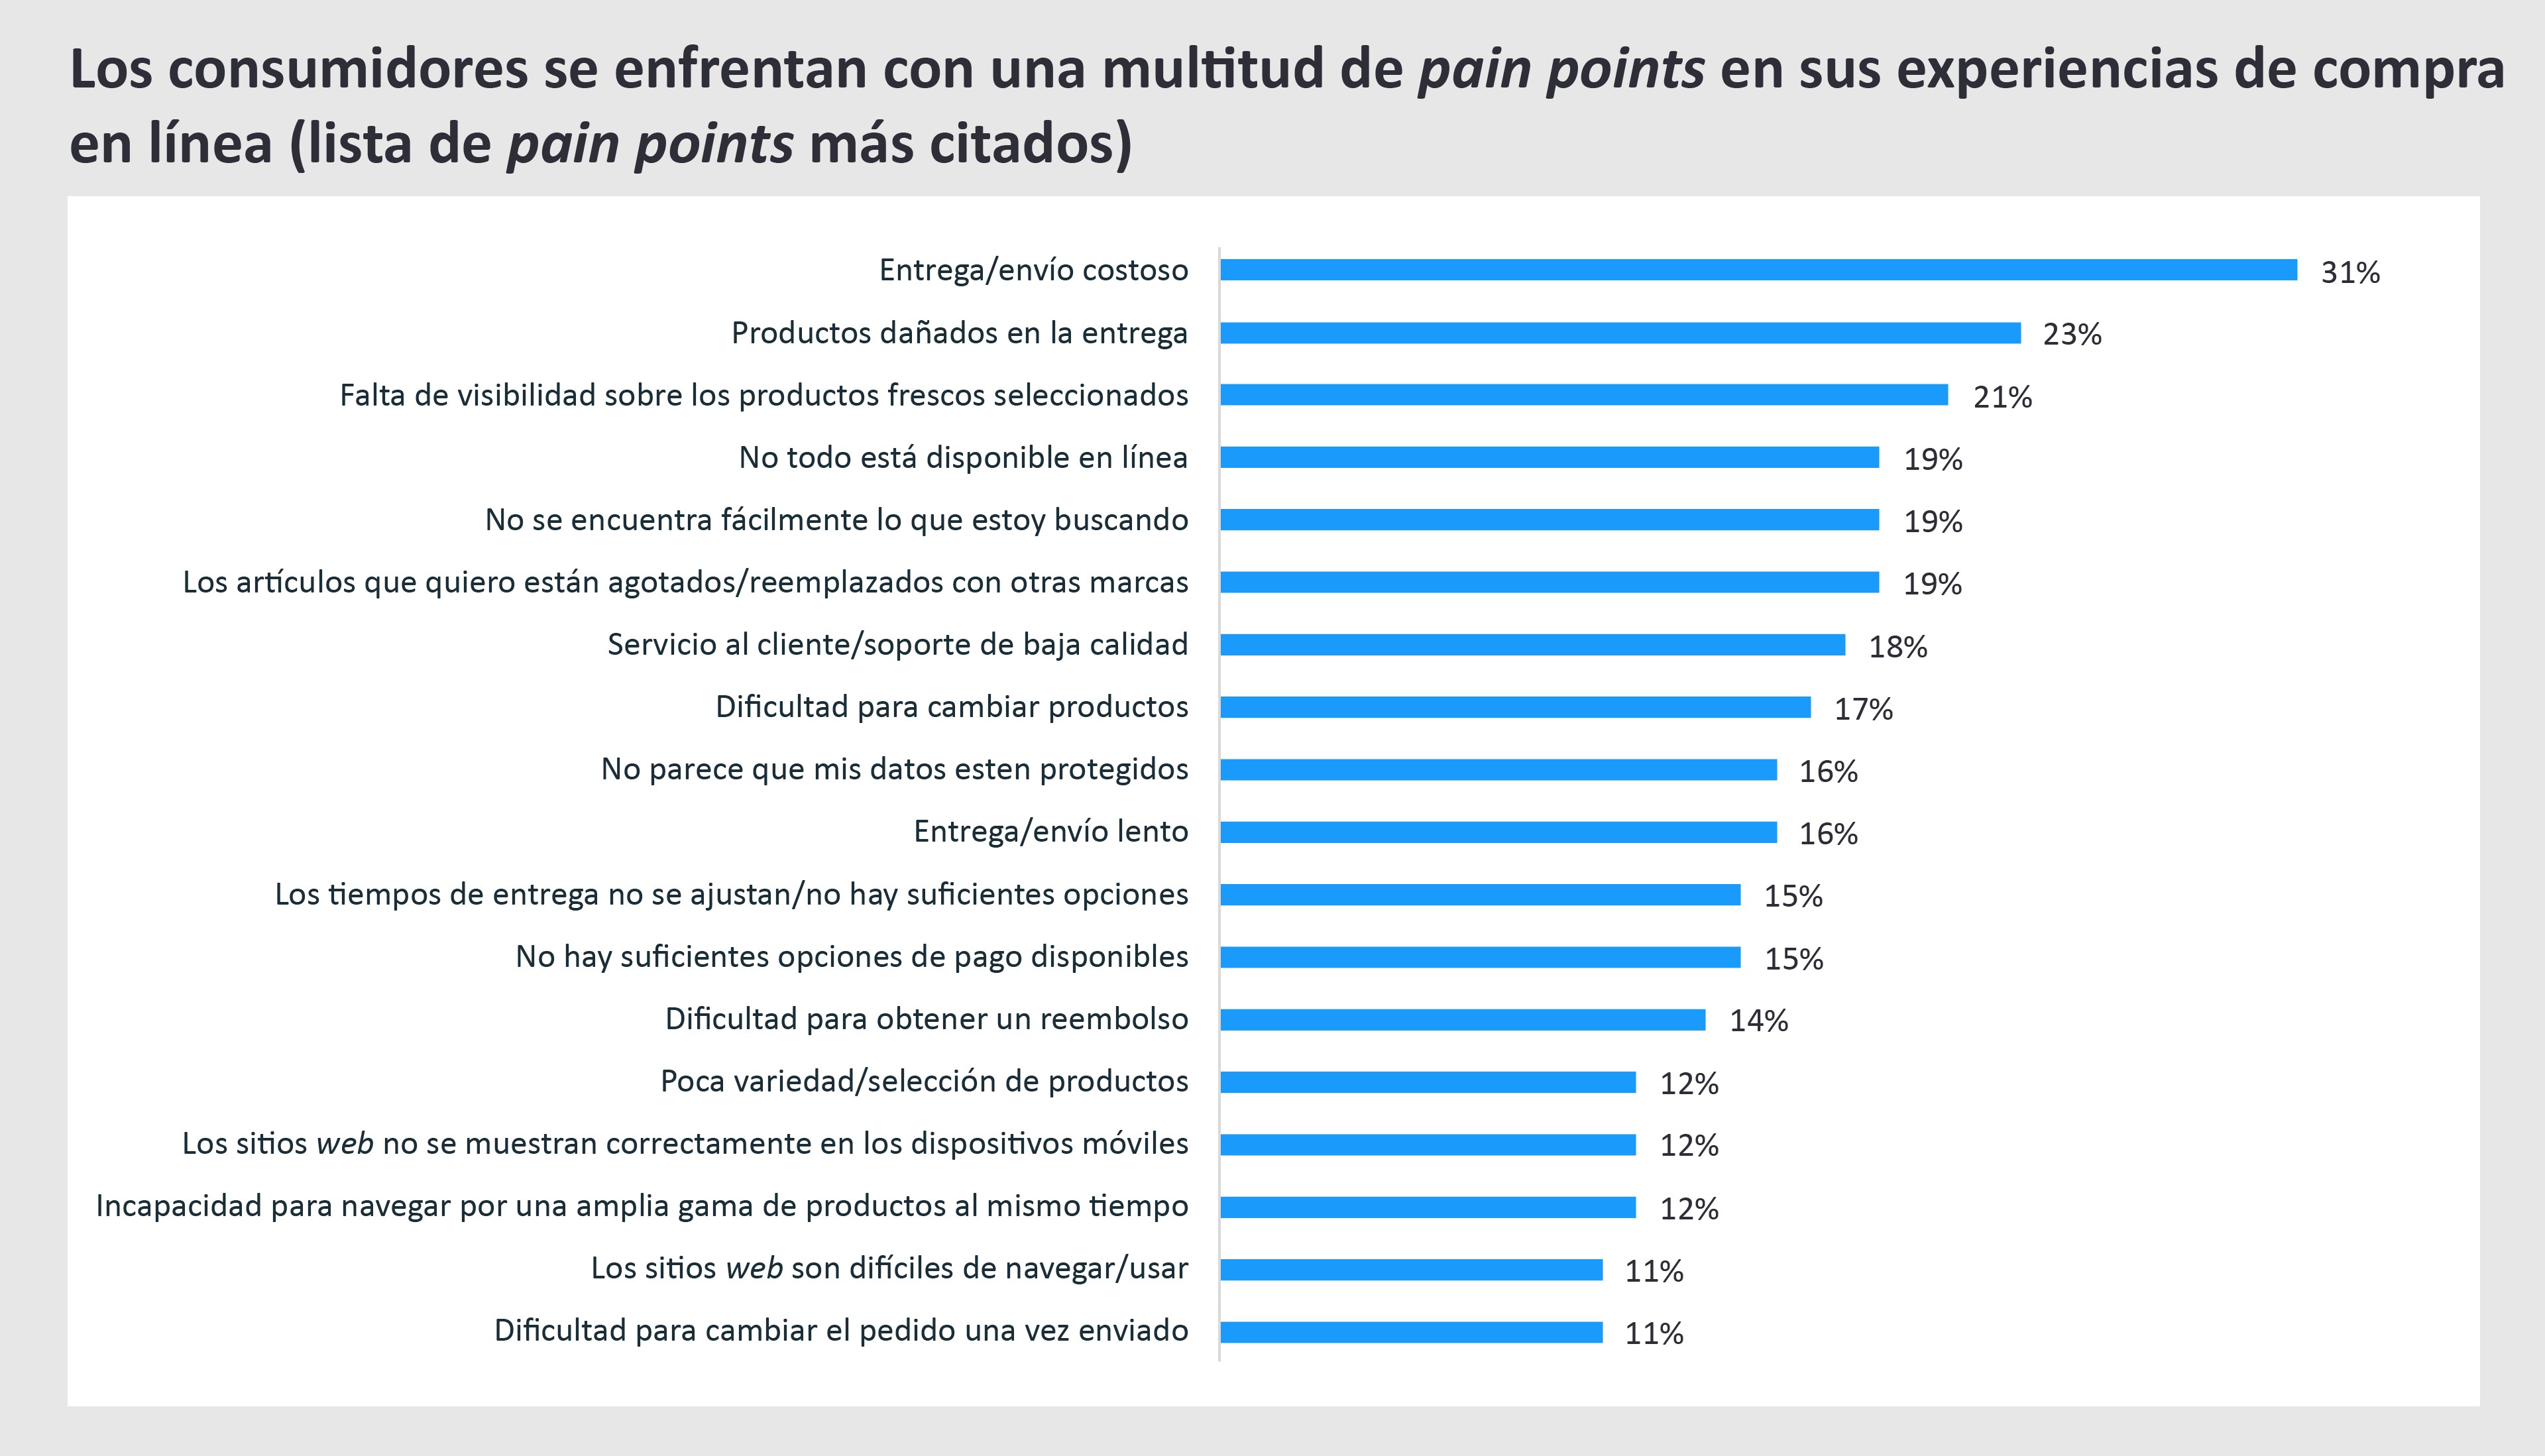 Gráfico de barras que representa en porcentajes los posibles eventos de insatisfacción que experimentan los consumidores en sus compras online